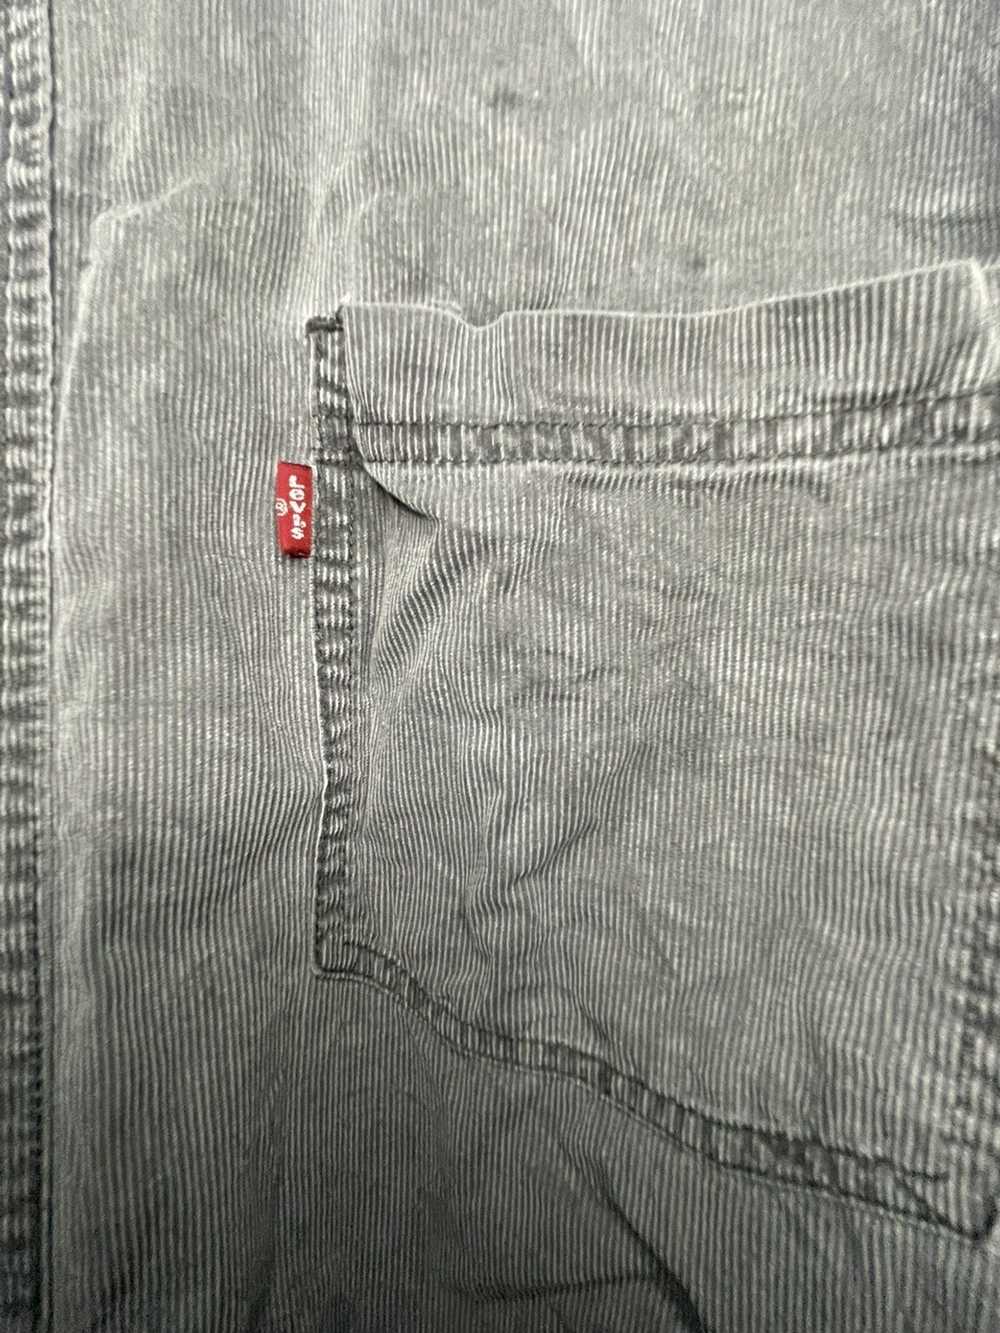 Levi's Corduroy Levi’s Button Up Shirt - image 2